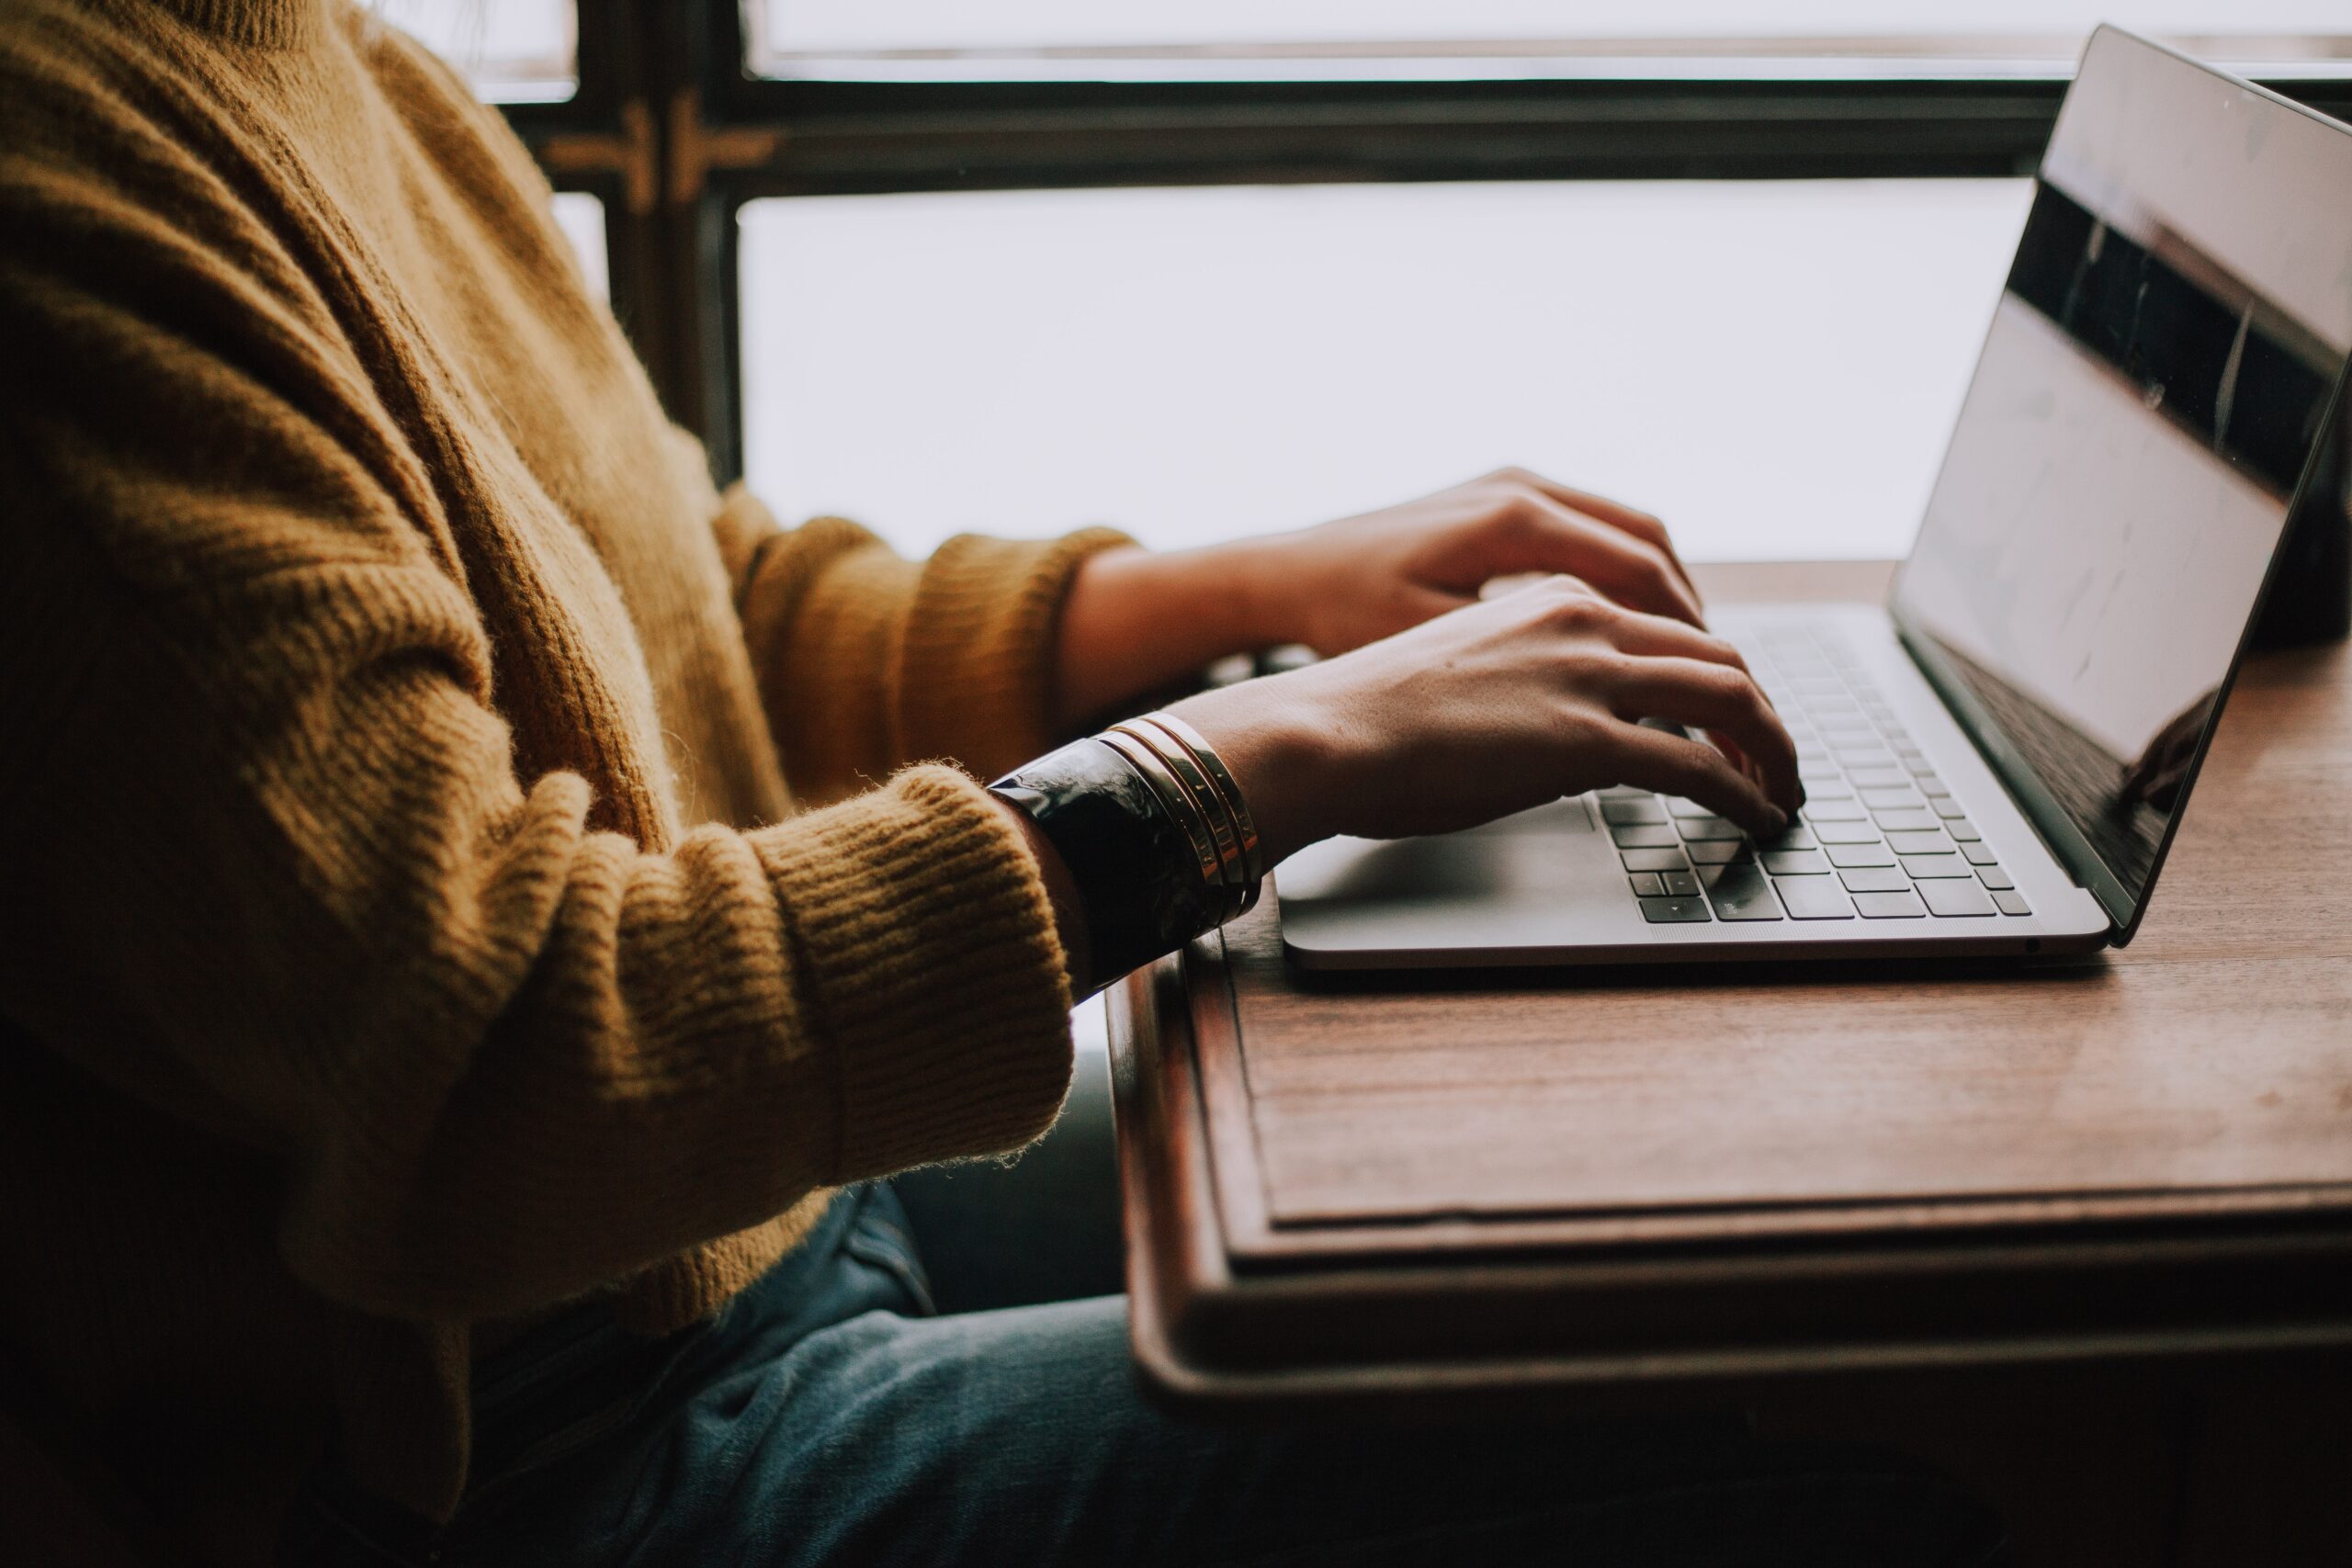 weiblich gelesene Person mit gelben Strickpulli arbeitet am Laptop